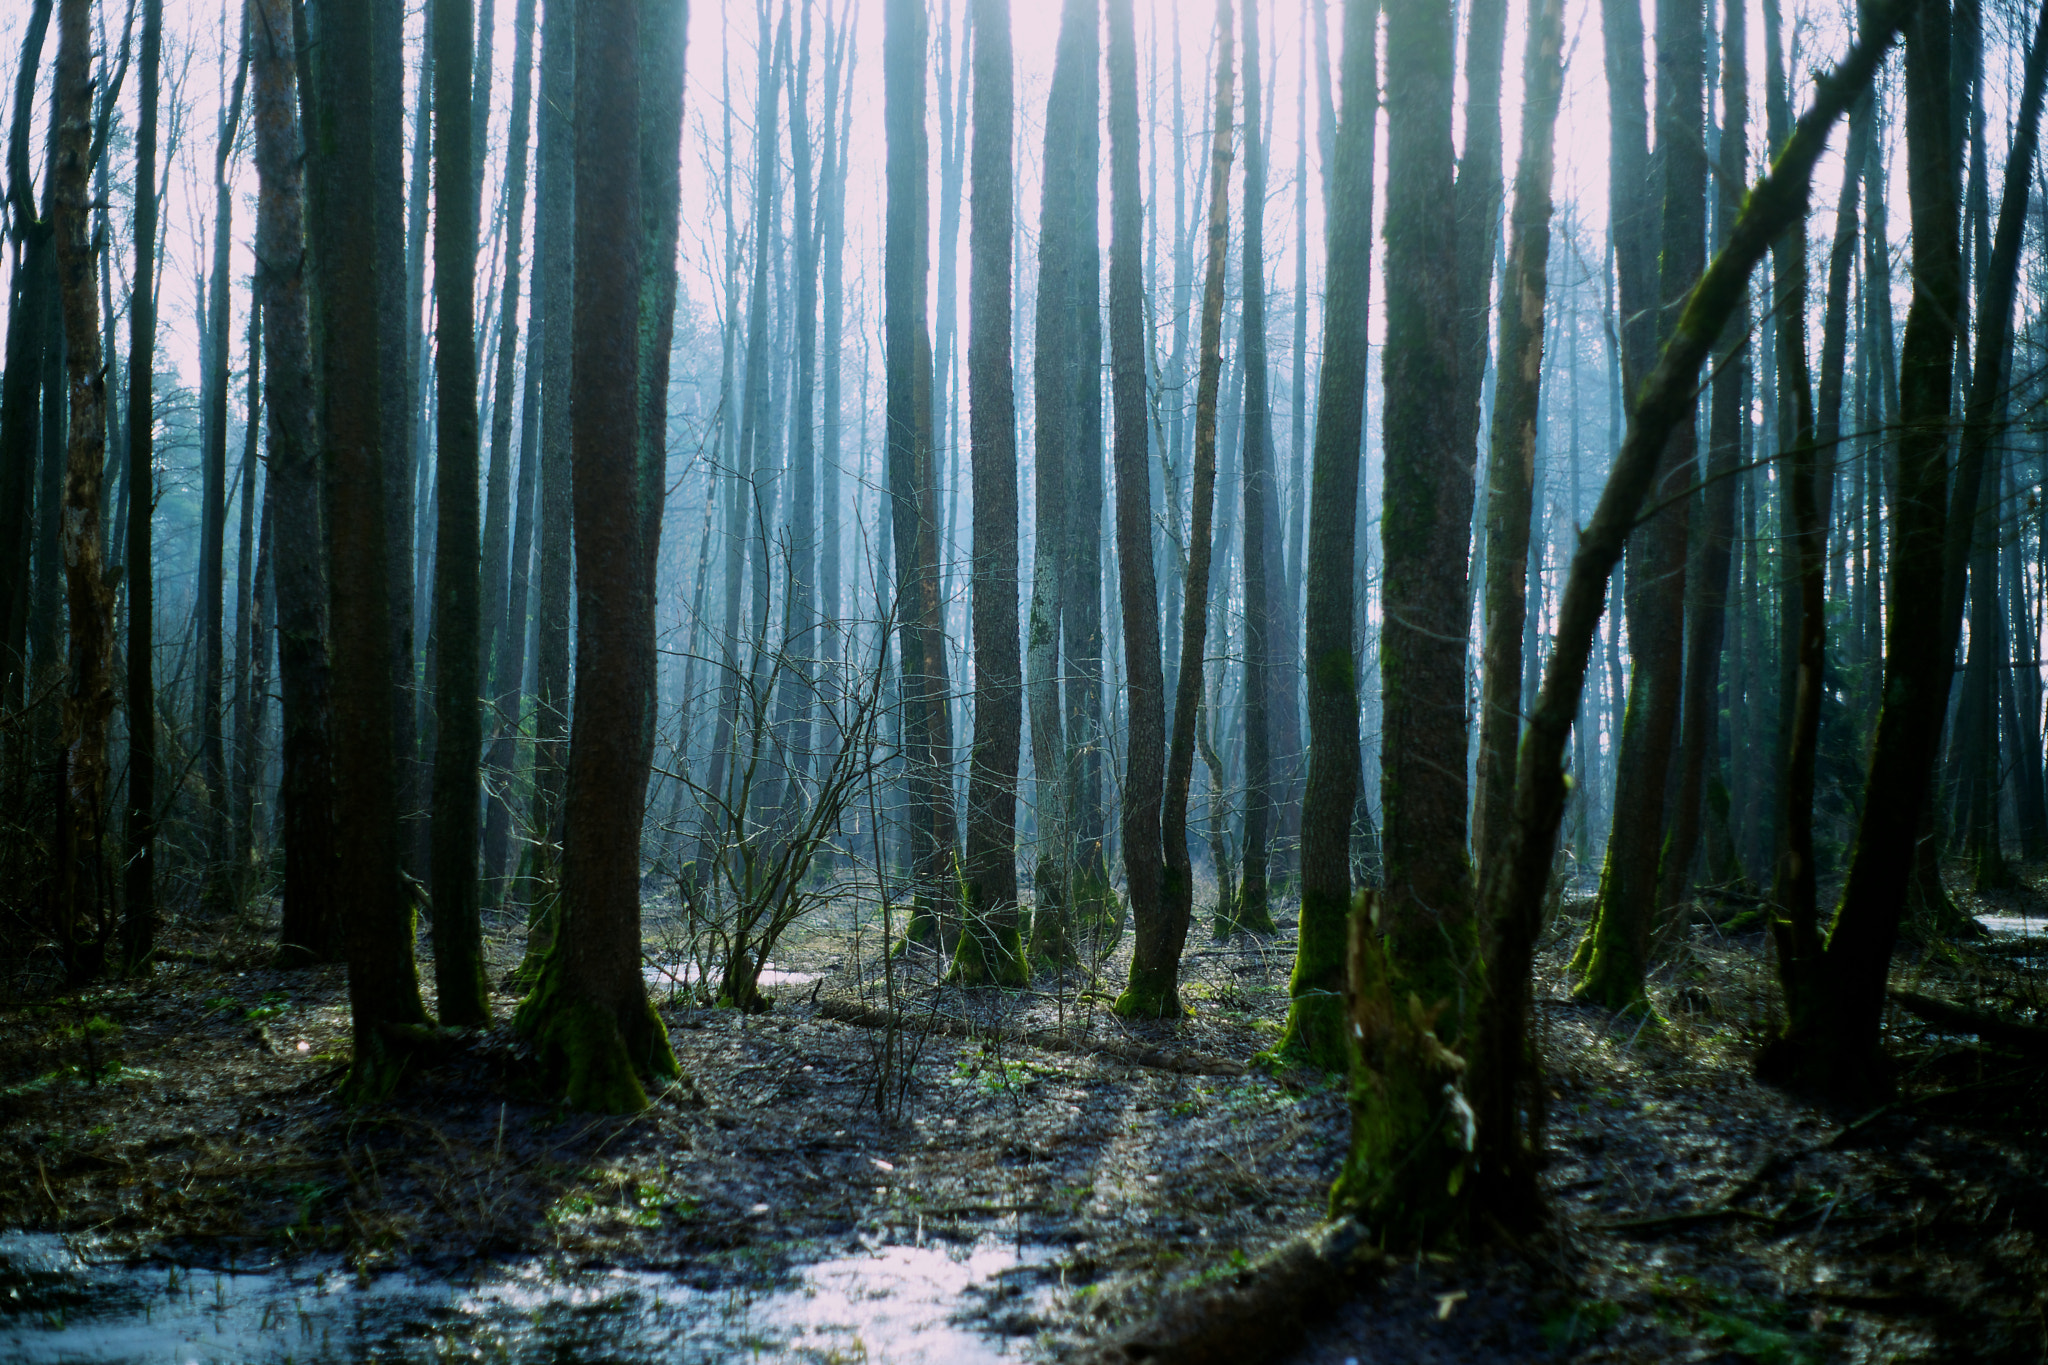 Sony Alpha DSLR-A850 sample photo. Foggy forest photography